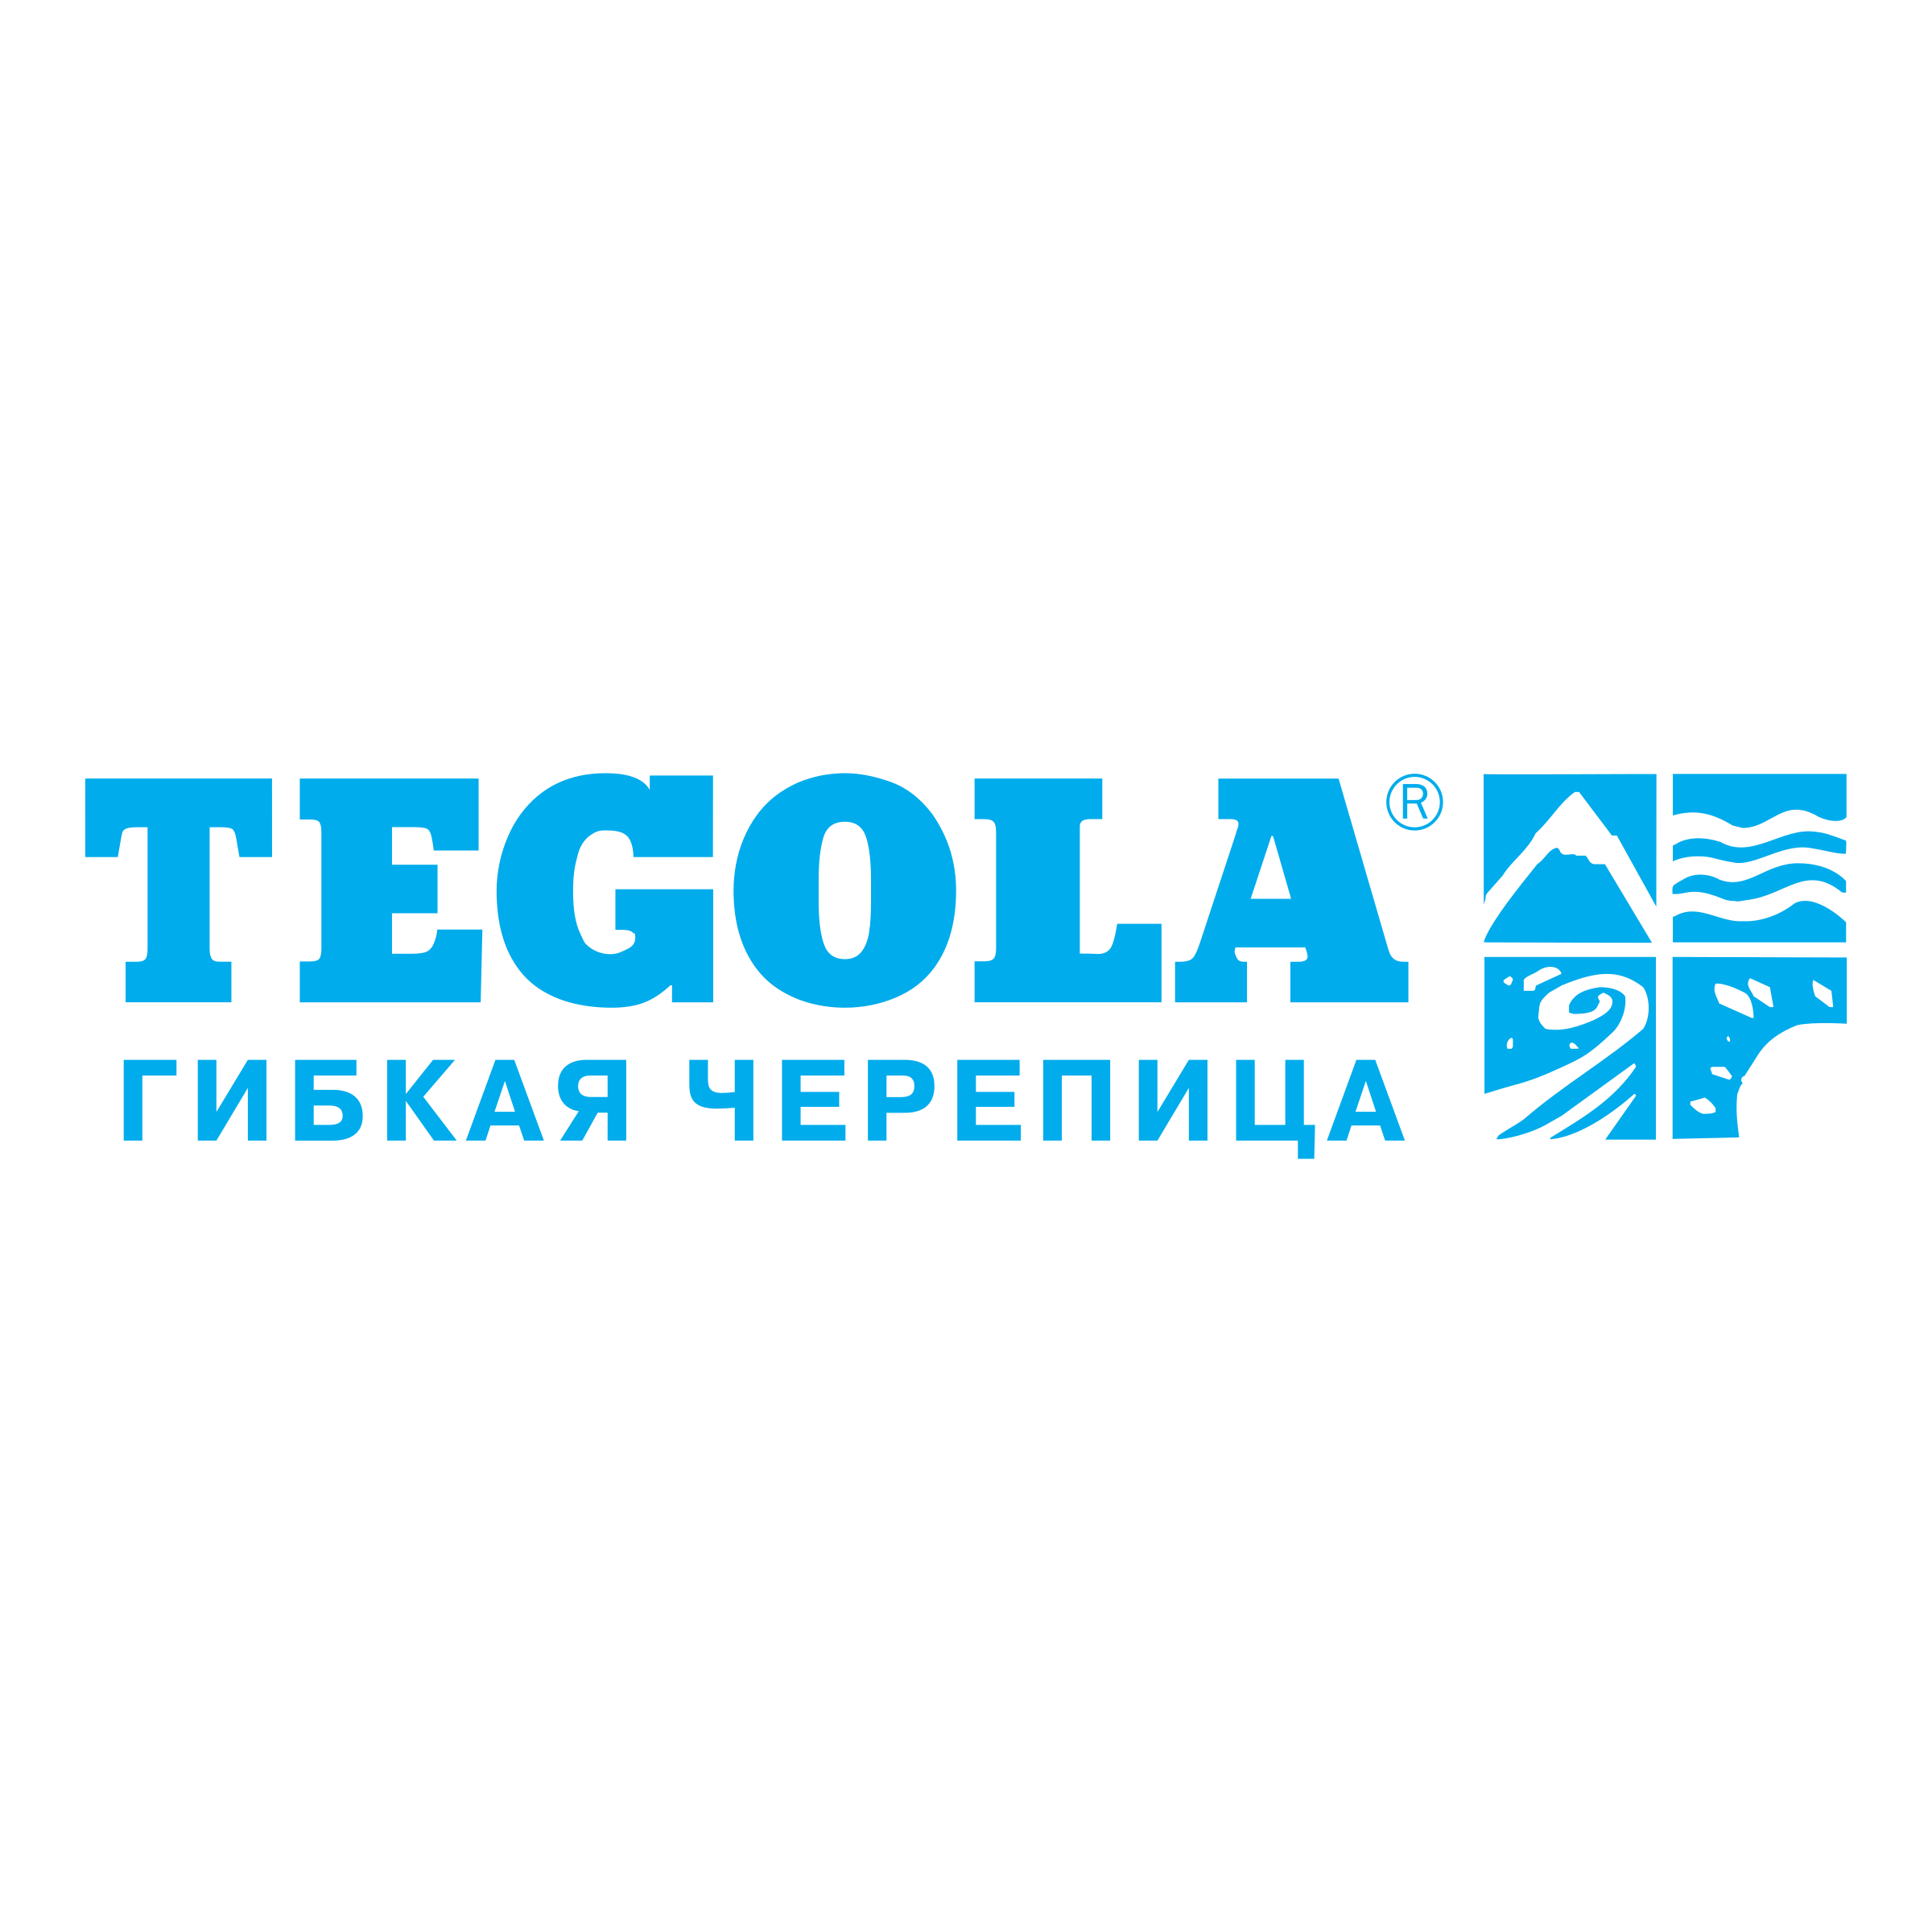 tegola-logo-png-transparent